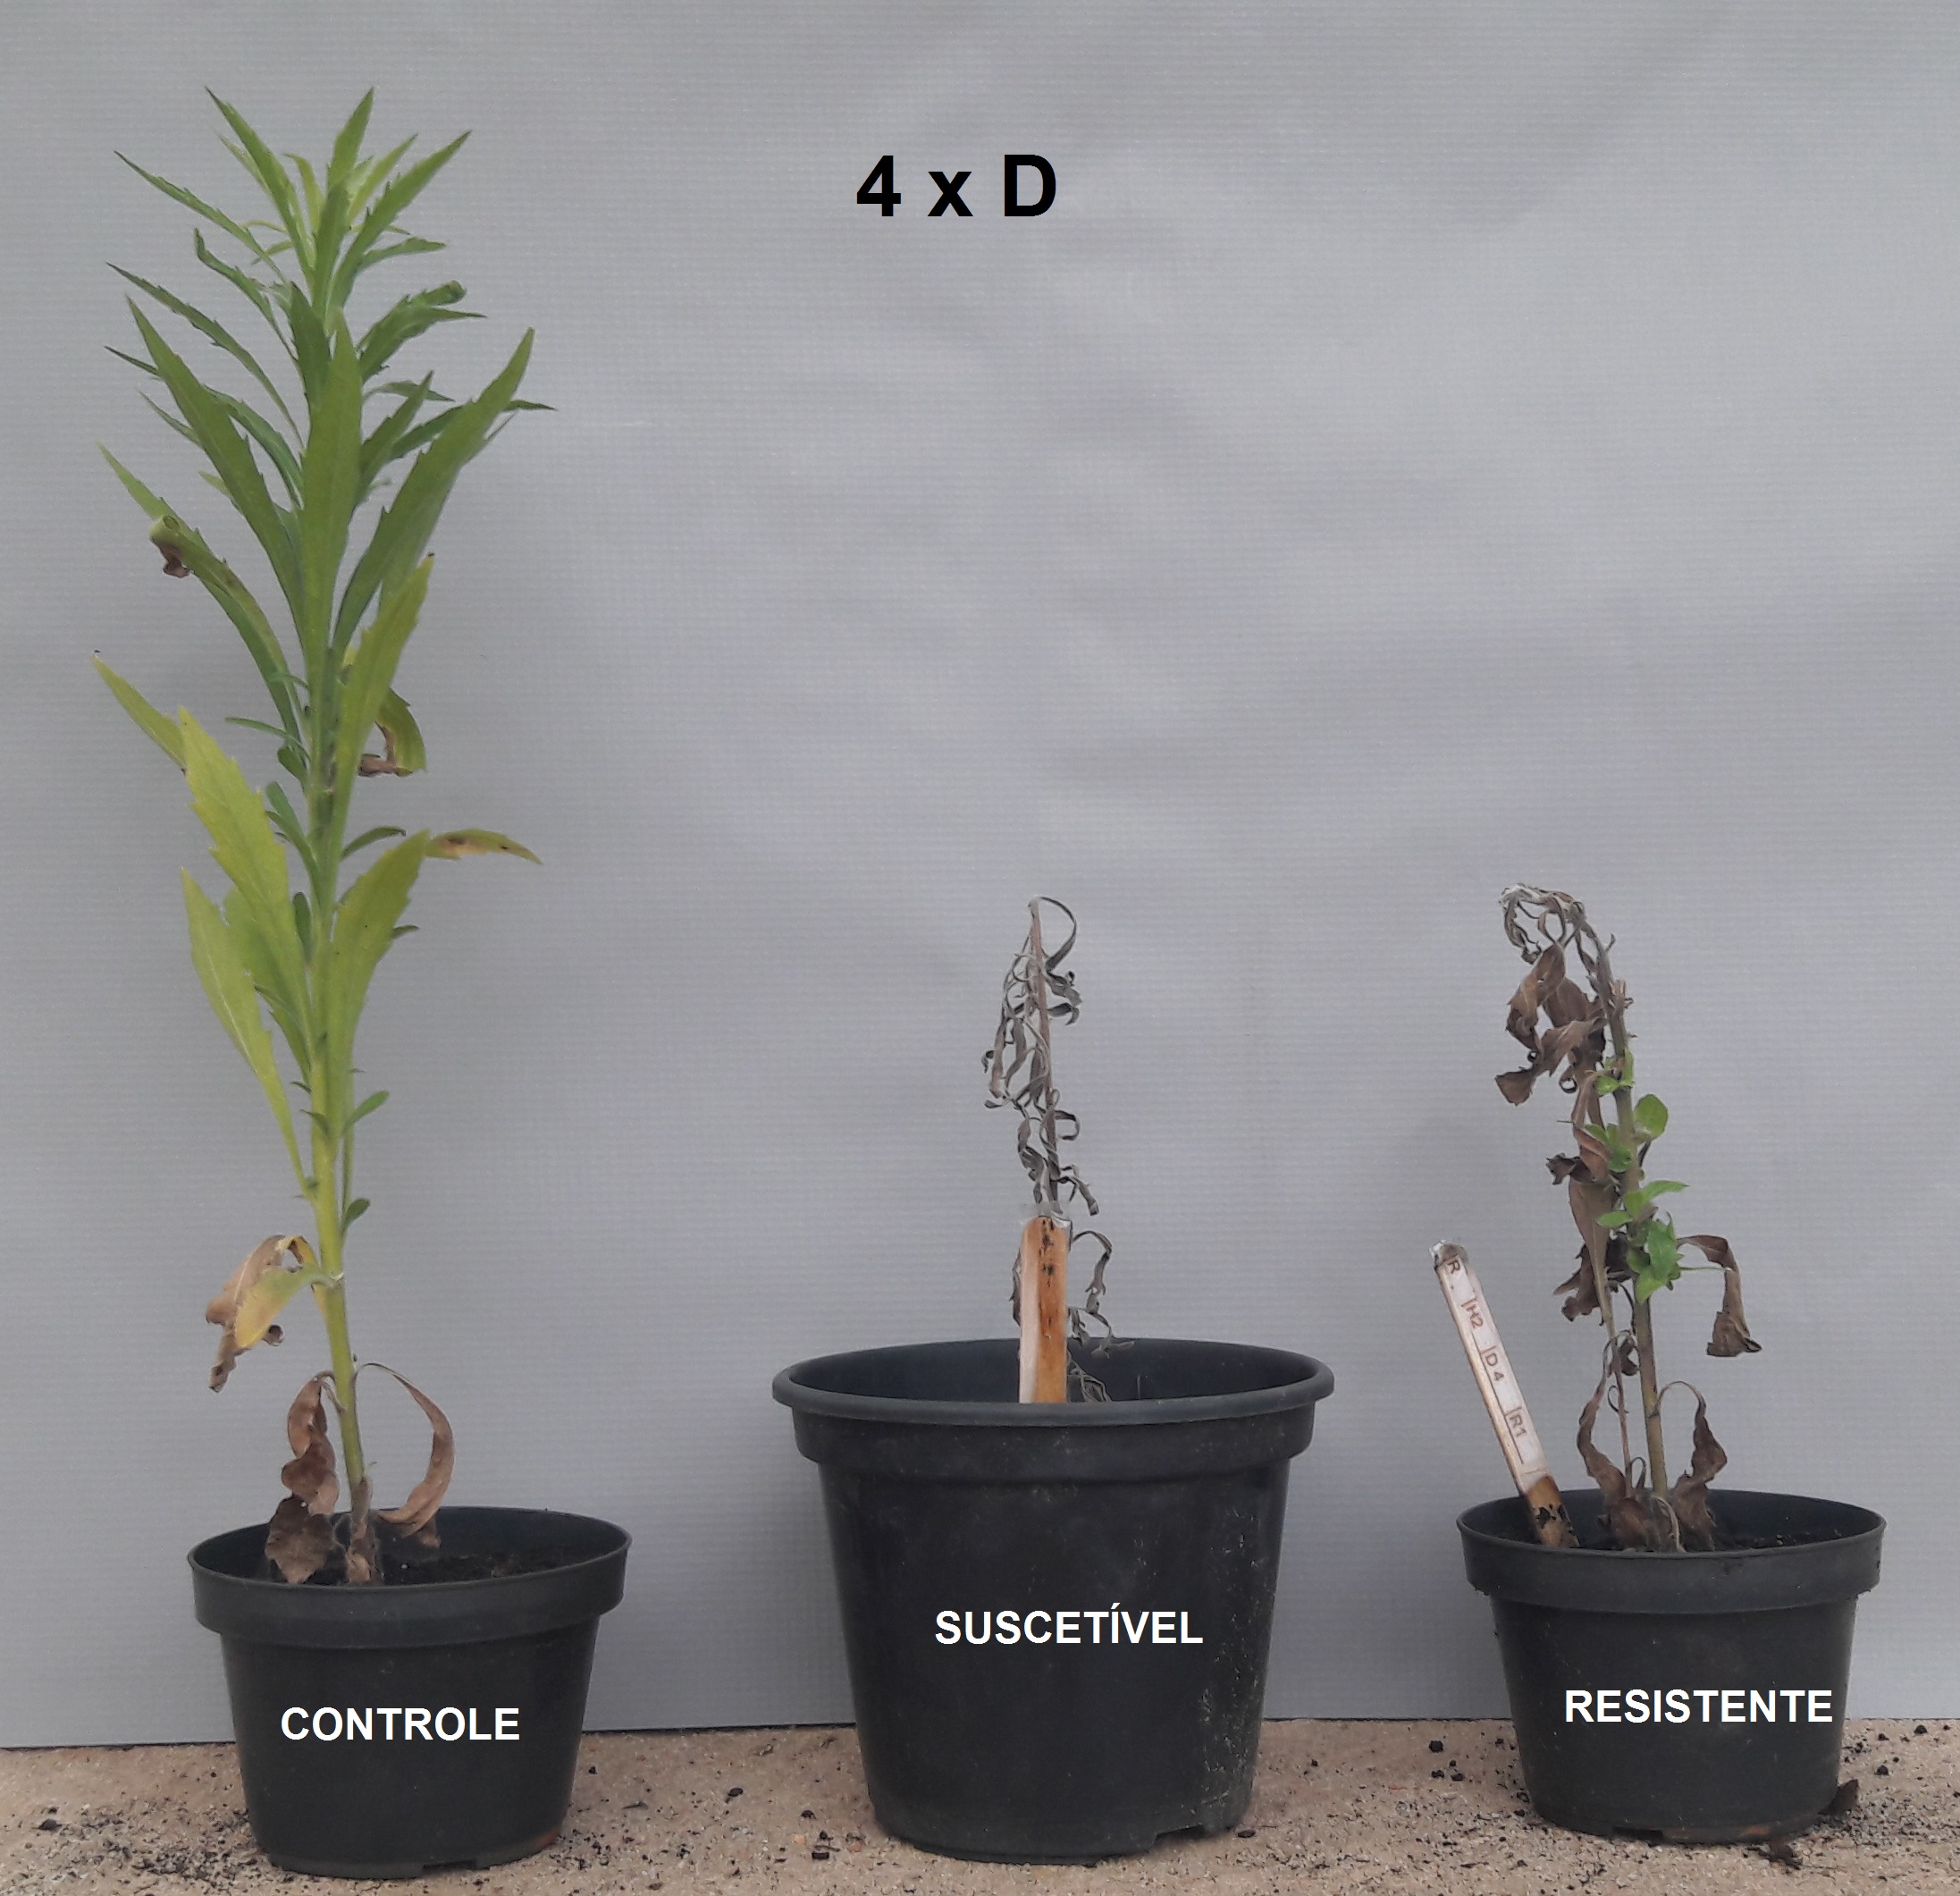 C. sumatrensis sob aplicação de 16 vezes a dose de saflufenacil (280g i.a. ha), aos 28 dias após aplicação e detalhe do rebrote das plantas resistentes